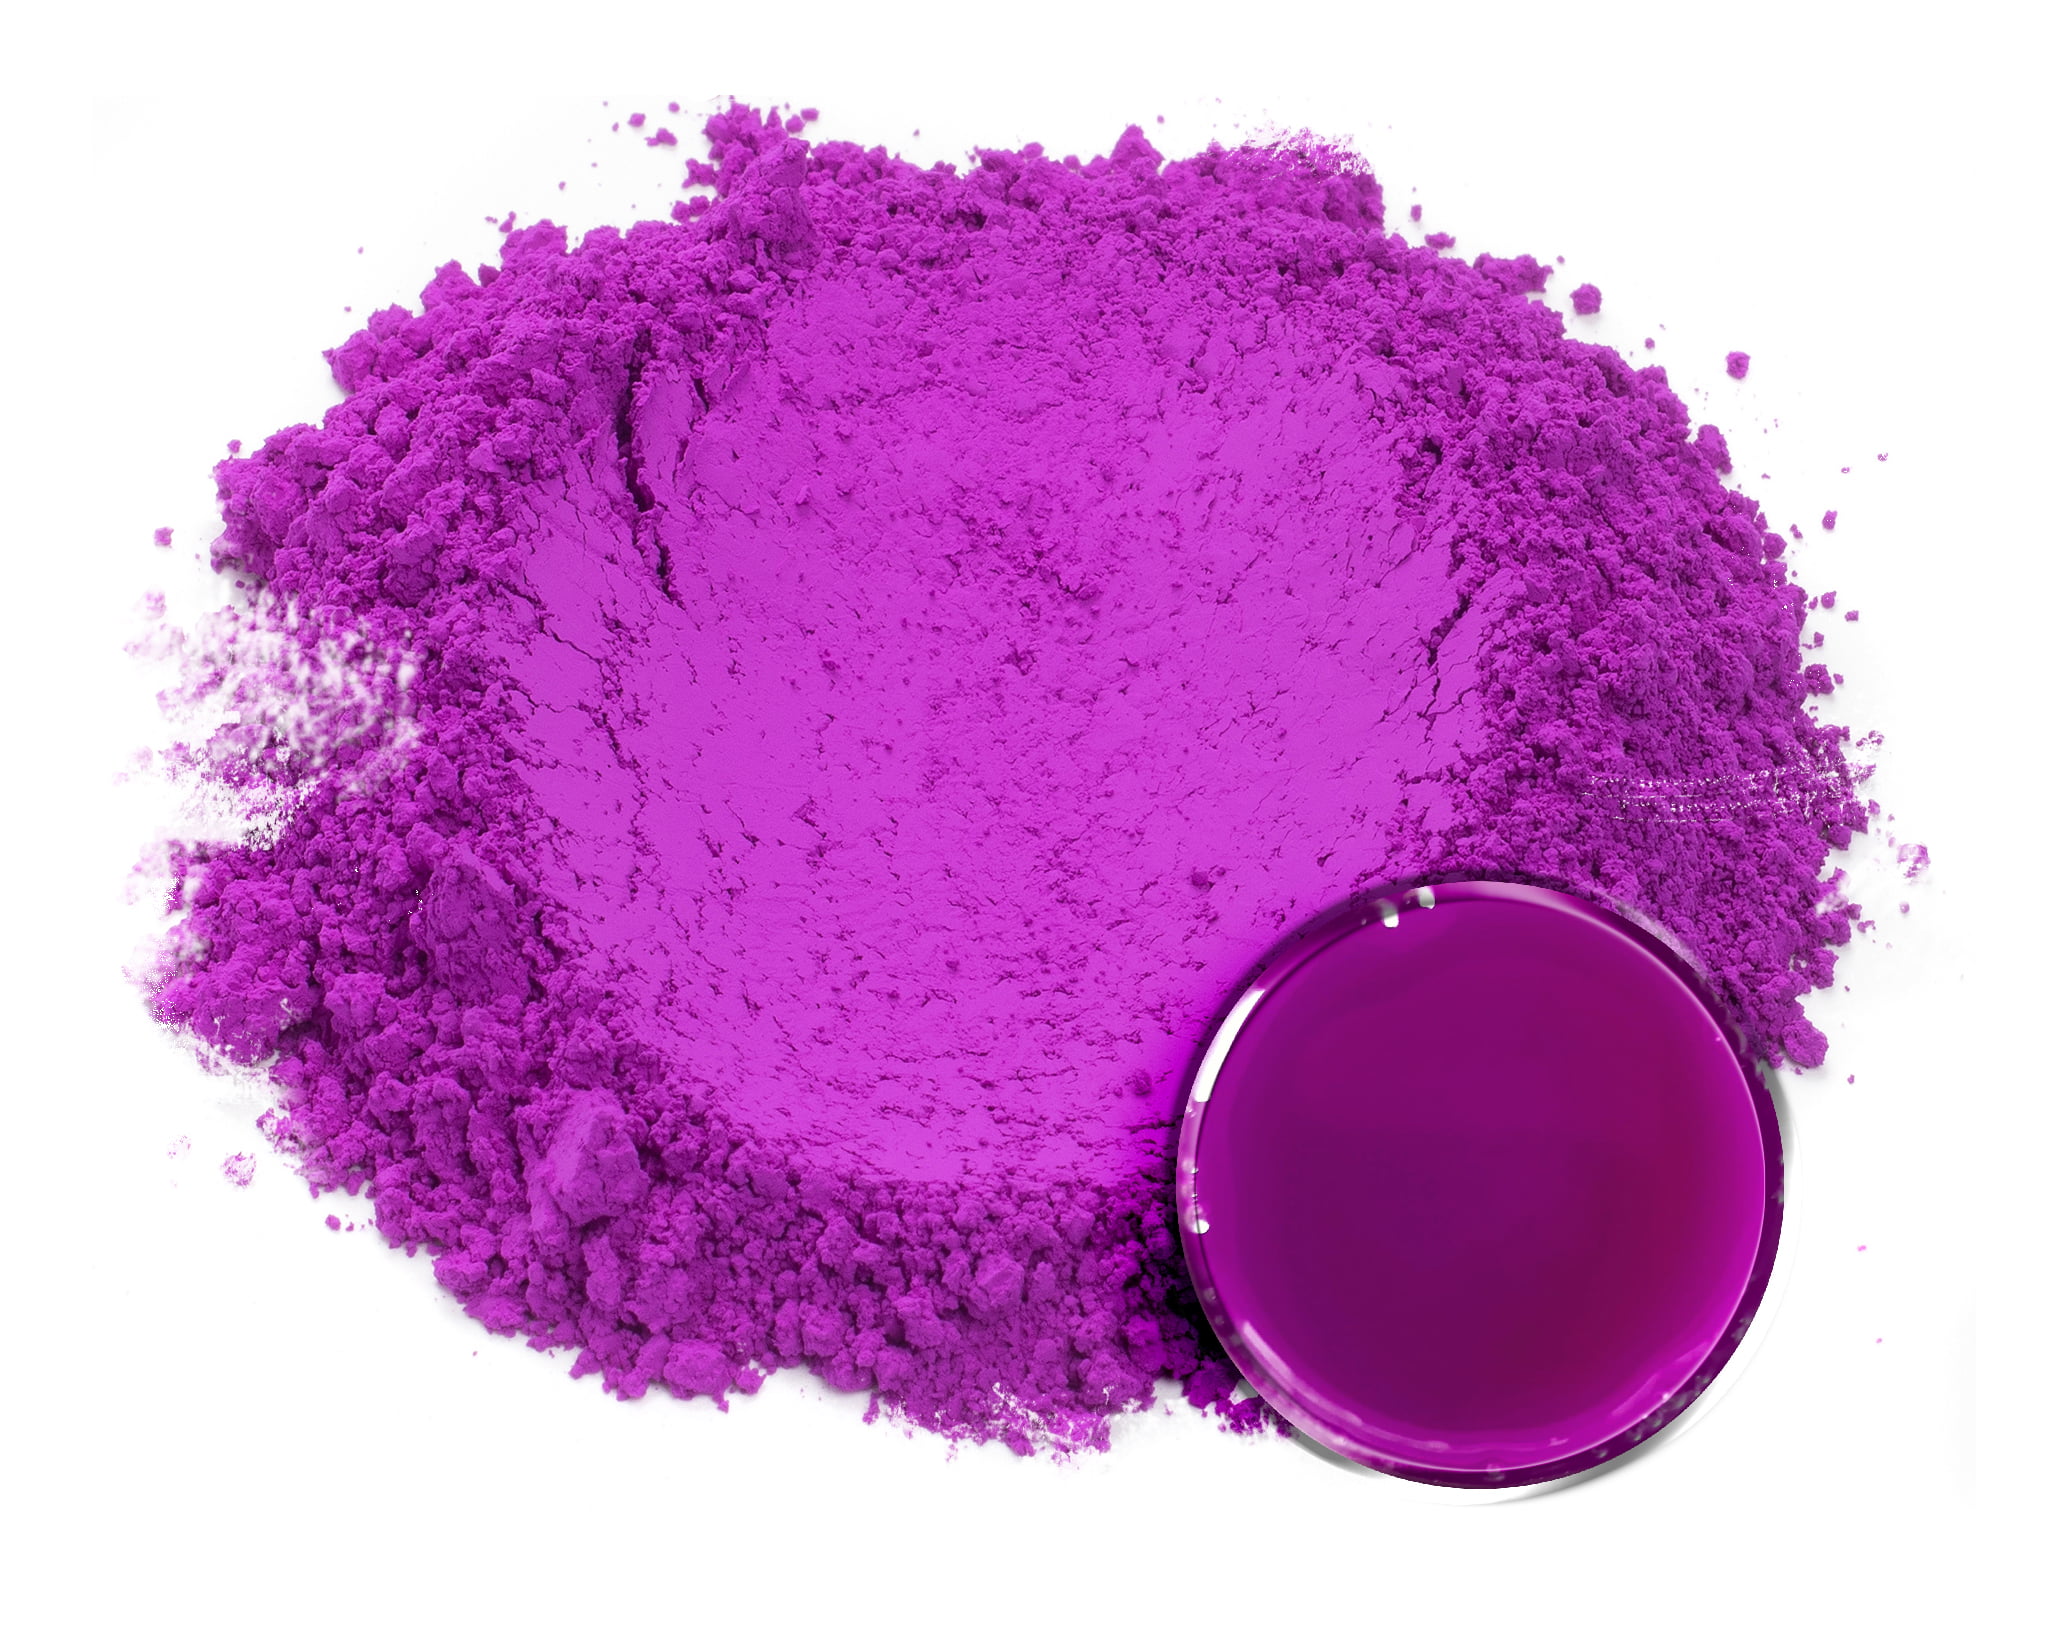 Neon Mica Powder Pigment Enhancer Bundle (6 Colors) – Sparkly